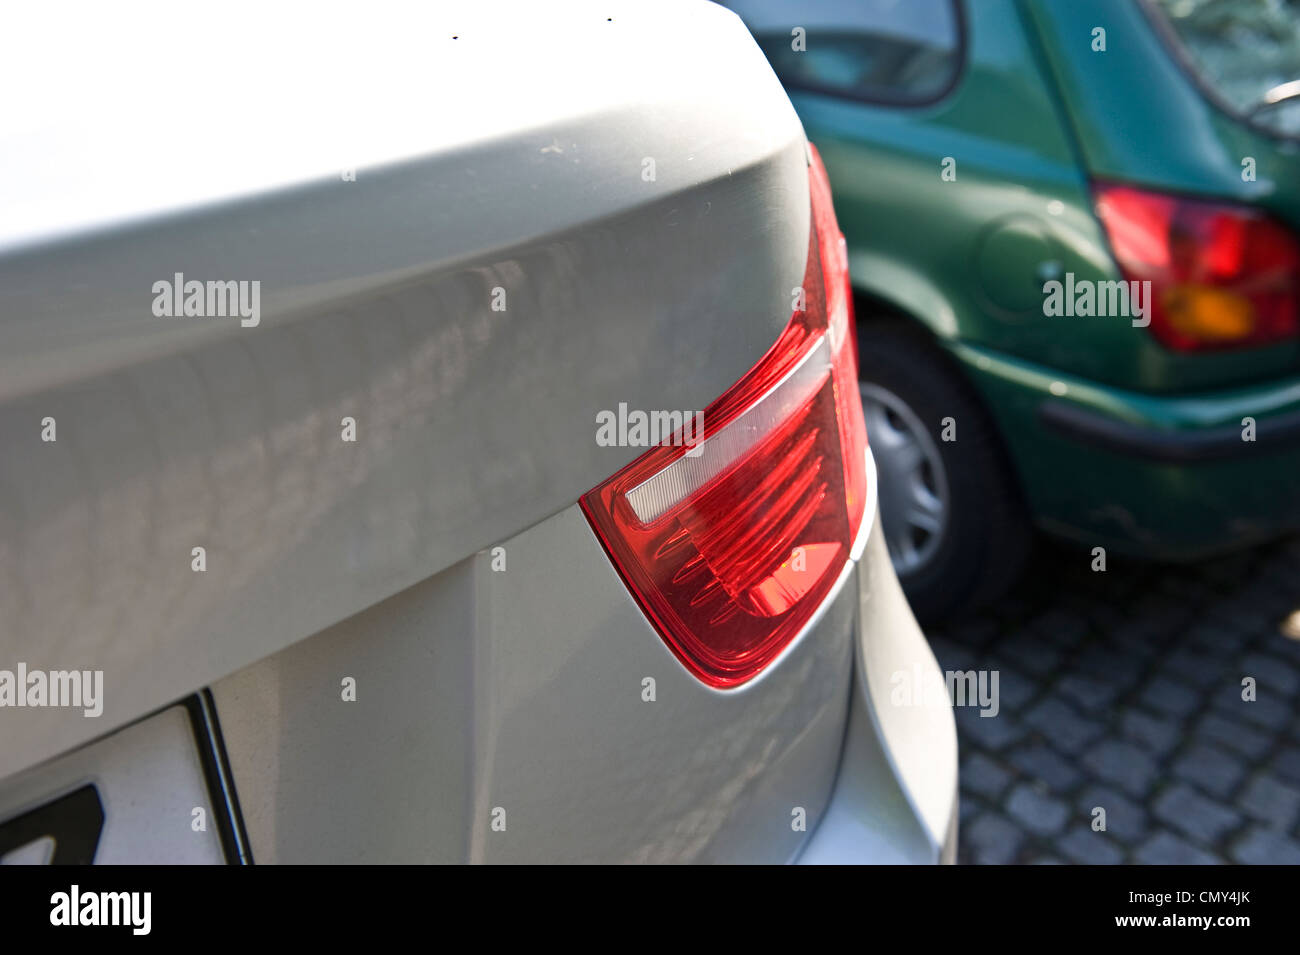 Un angle shot de l'arrière droit d'un livre blanc BMW X6 dans un parking à côté d'une voiture verte. Banque D'Images